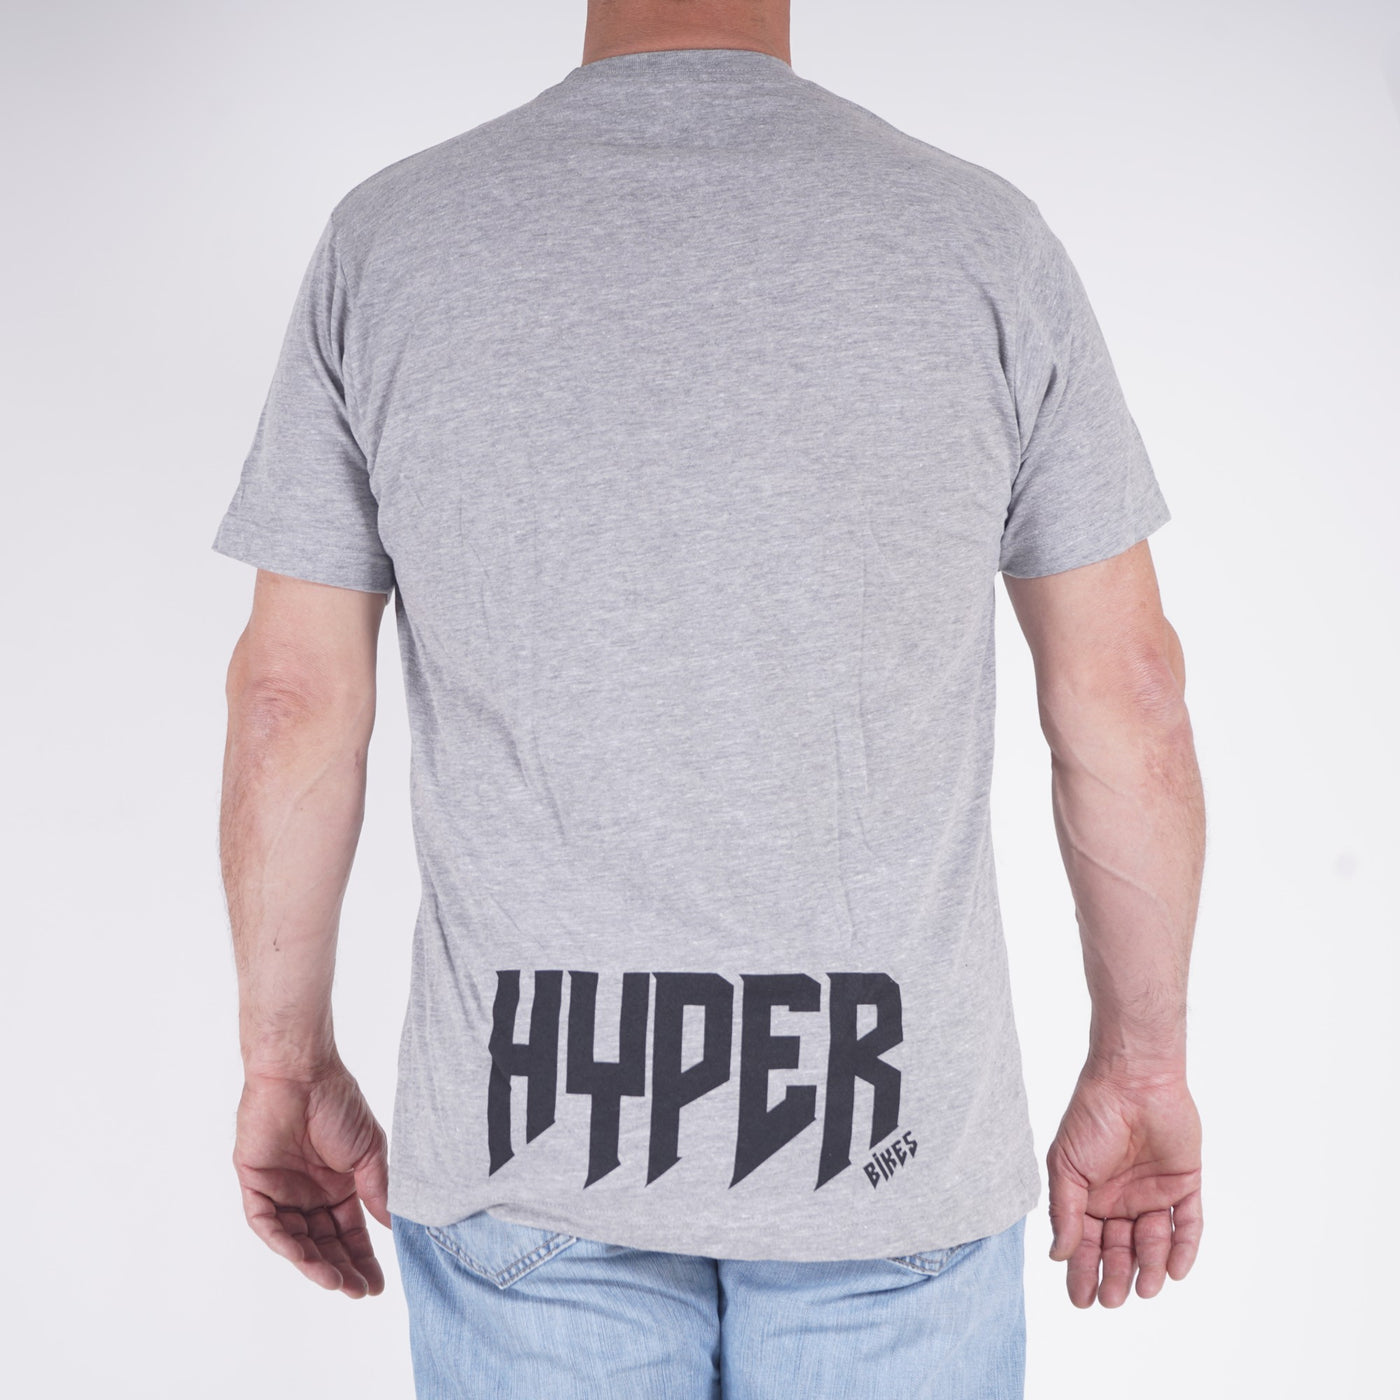 Hyper H Tee T-Shirt